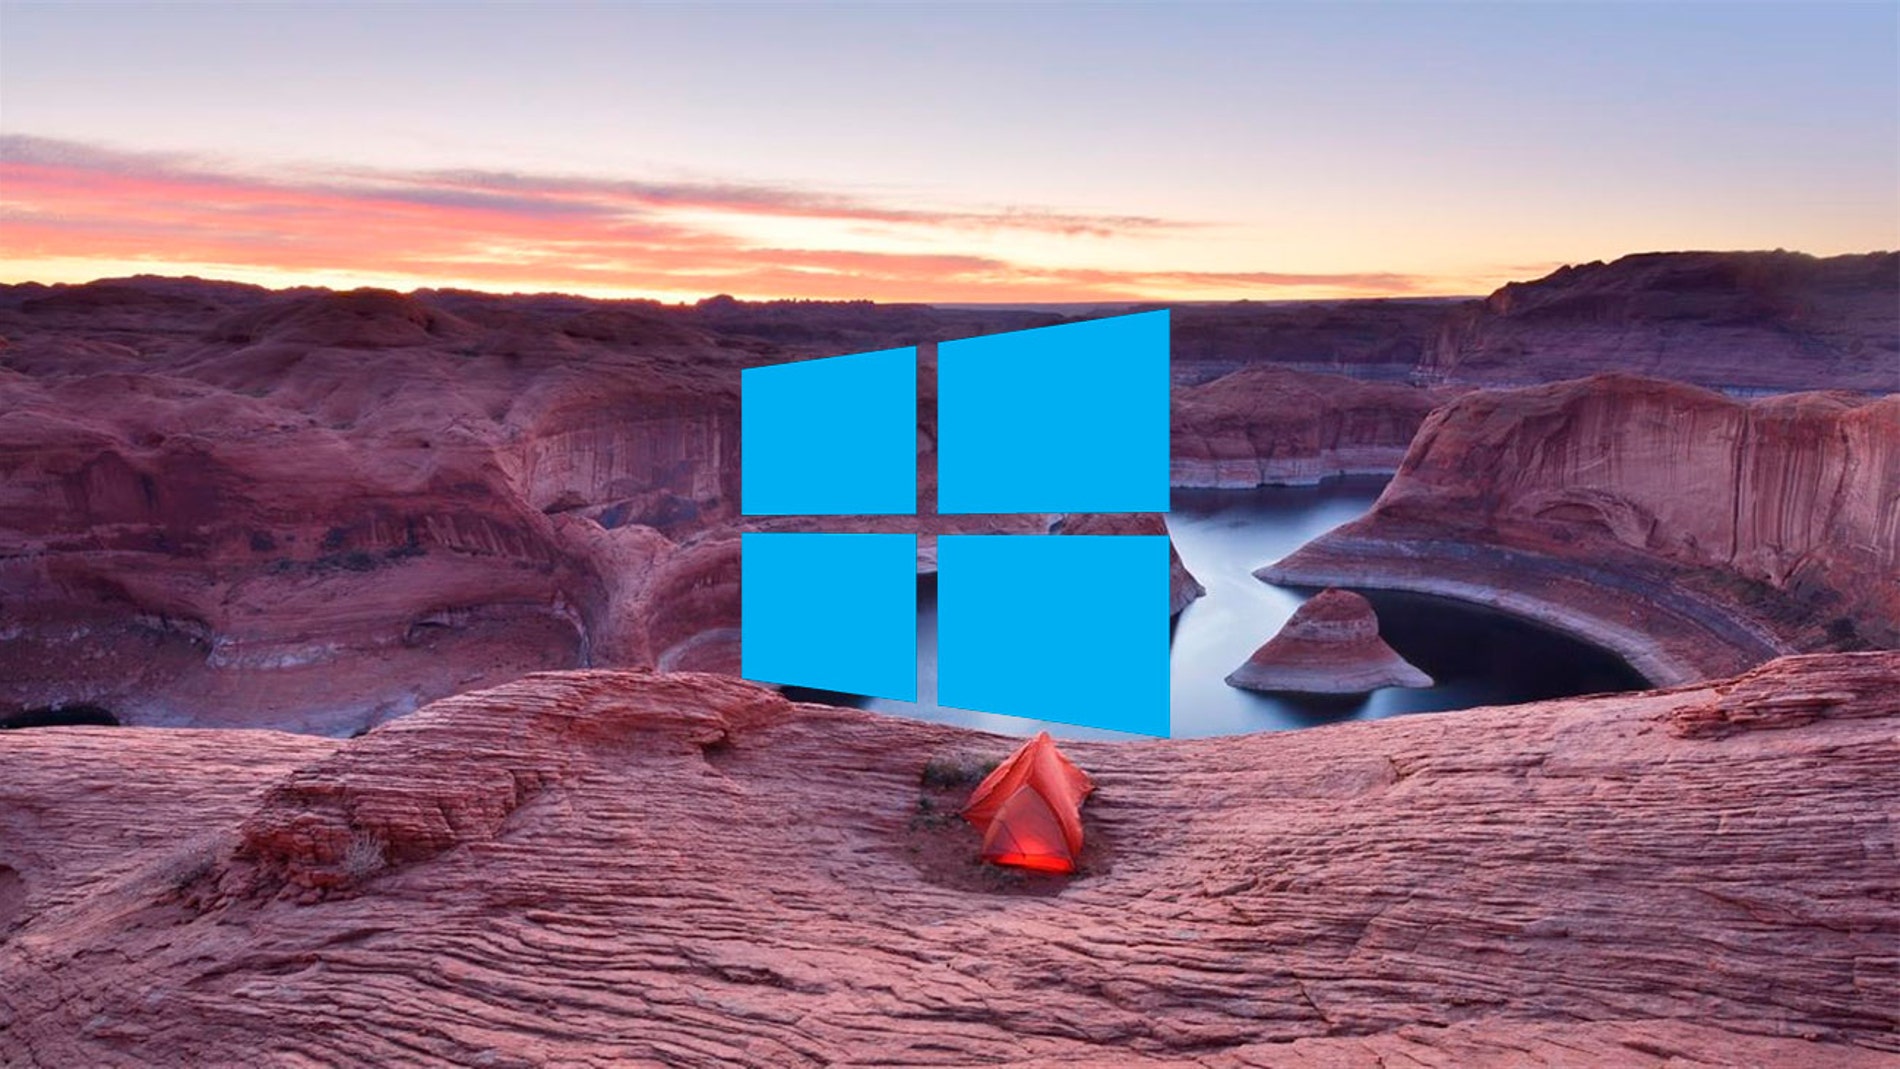 Descarga los nuevos fondos de pantalla oficiales de Windows 10 totalmente  gratis